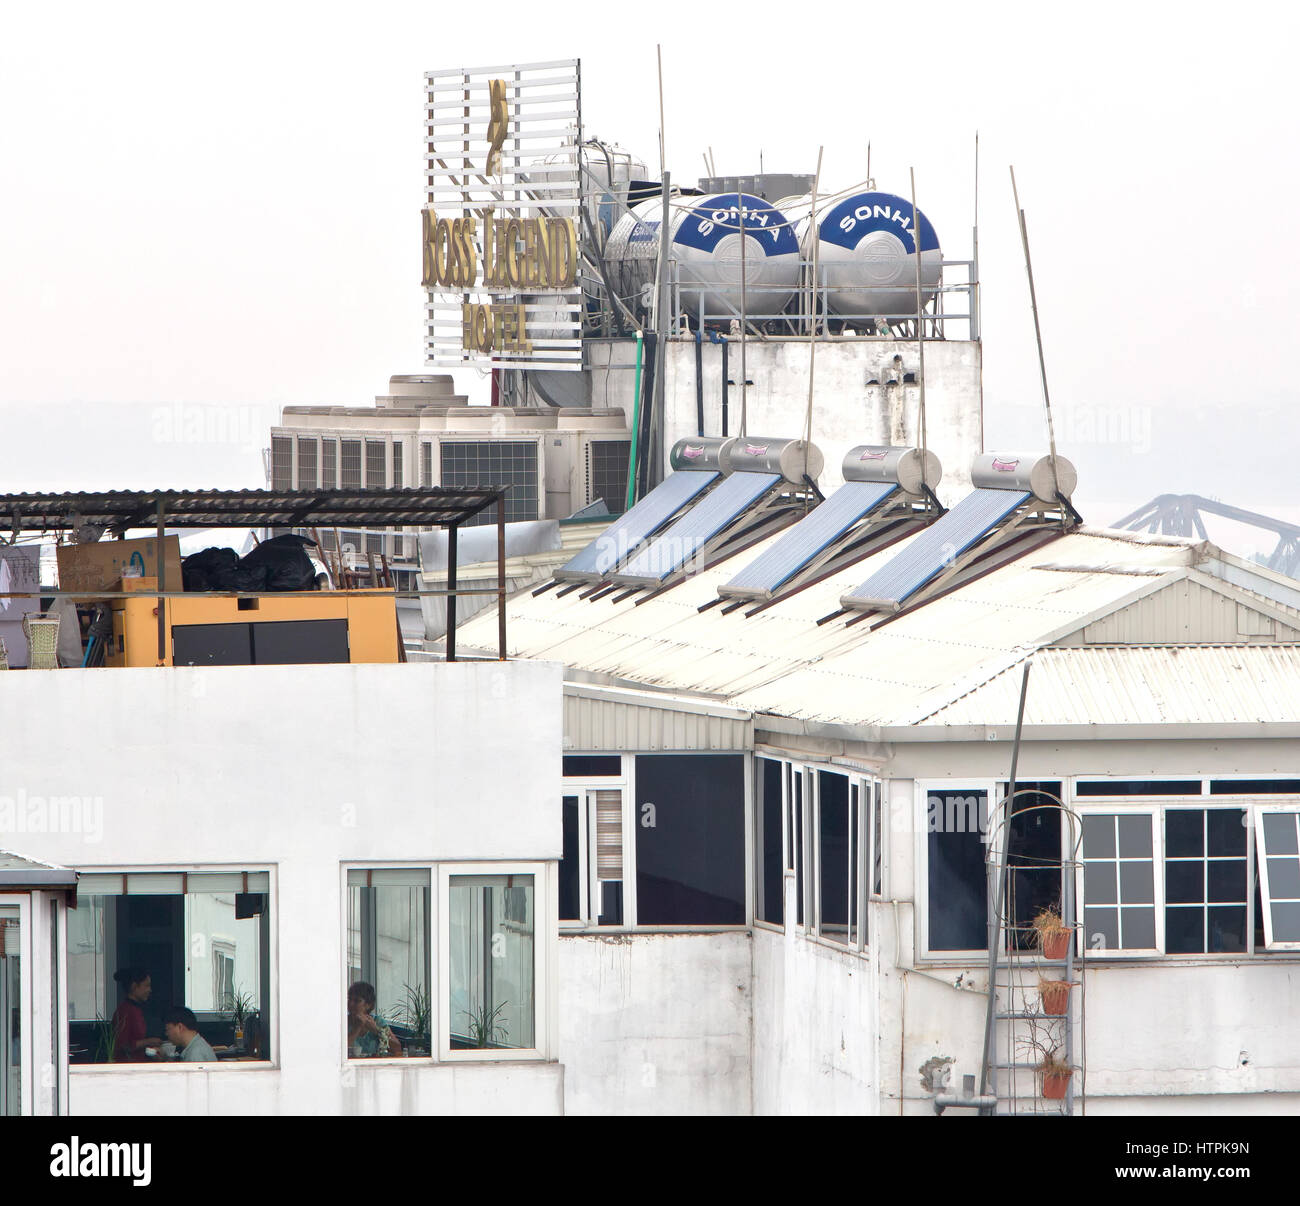 Solar-Warmwasser-Heizungen mit holding Tanks auf Dachterrasse, Boss Legend Hotel Hochhaus installiert. Stockfoto